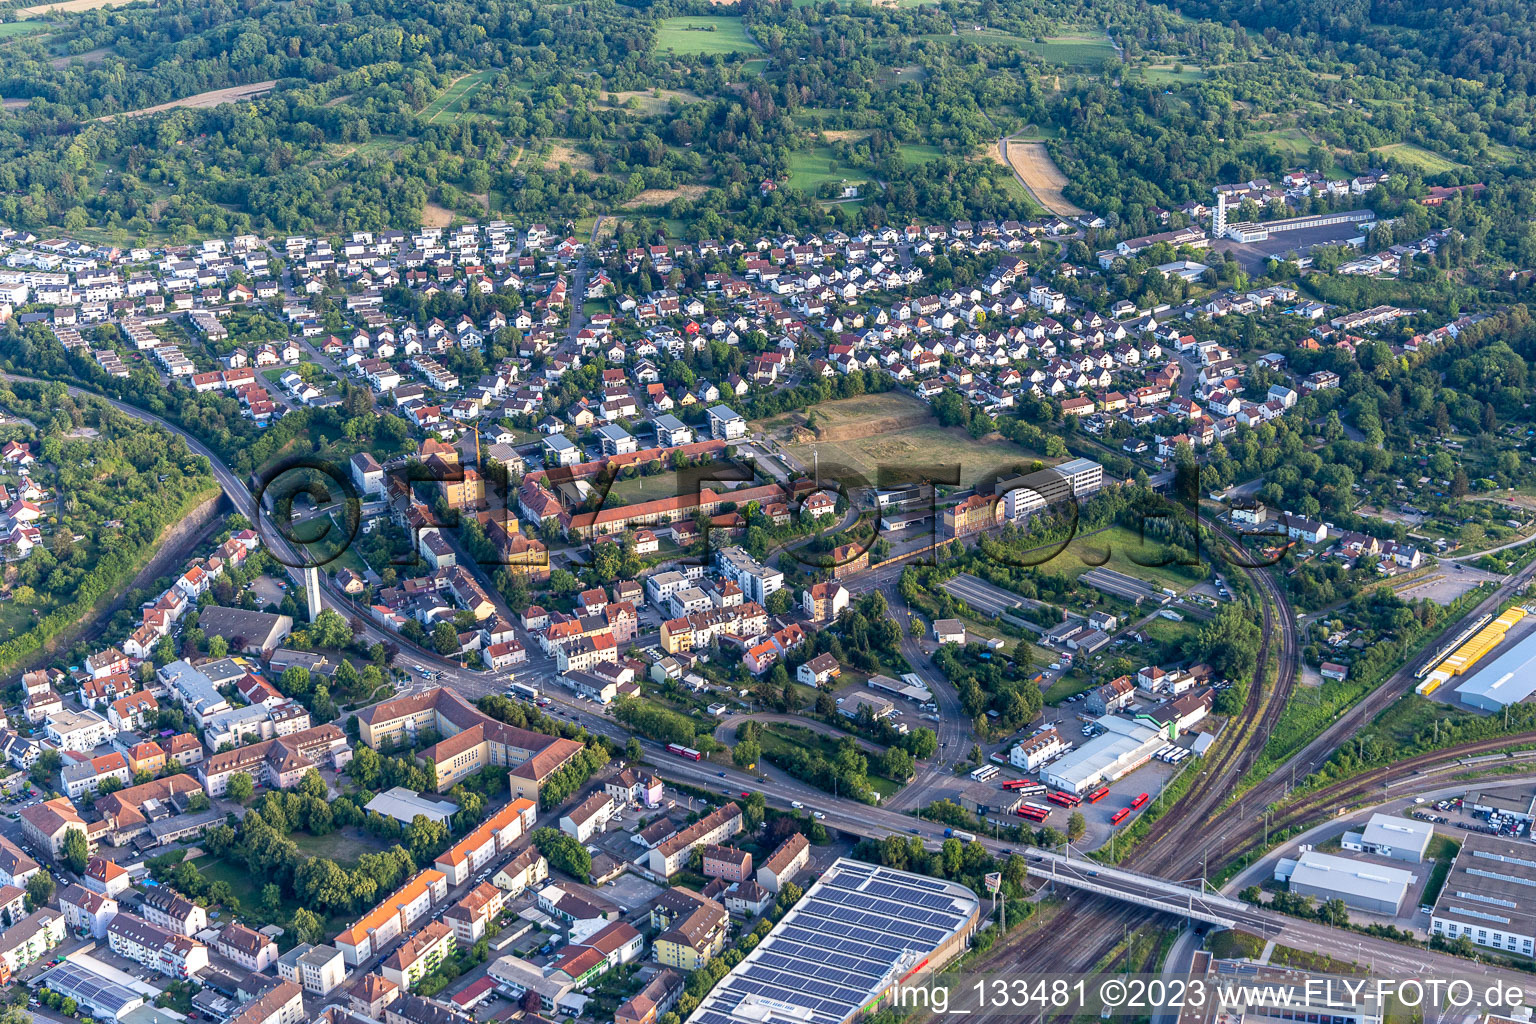 Vue aérienne de Campus de lierre à Bruchsal dans le département Bade-Wurtemberg, Allemagne